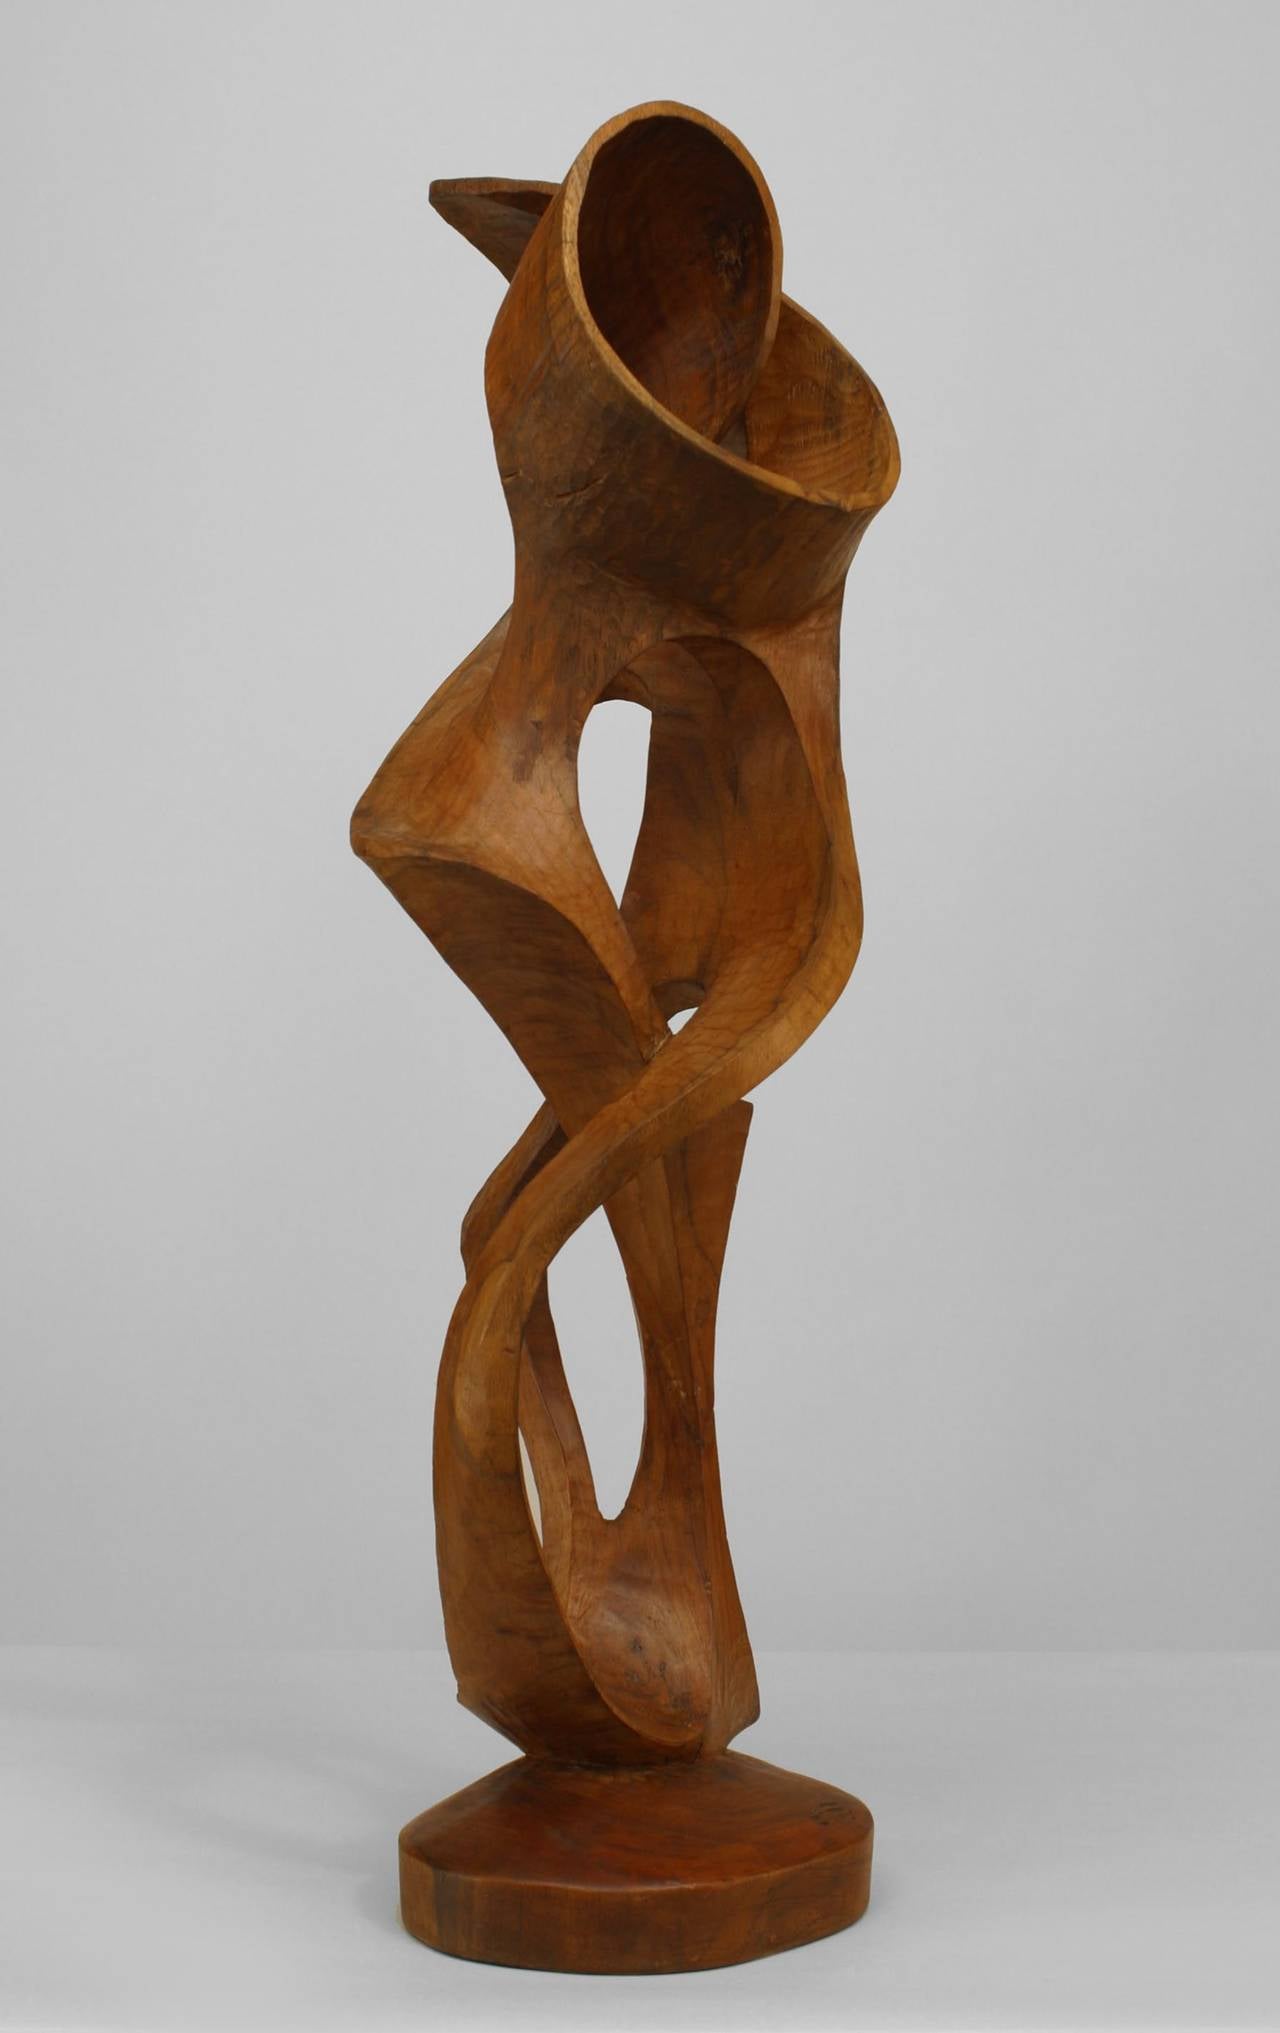 Zeitgenössische abstrakte Skulptur aus Ahorn (Ambrosia-Holz) in Form einer vertikalen Schnitzerei mit offenem Design, umgeben von Schnecken, die von einem massiven Sockel ausgehen.
